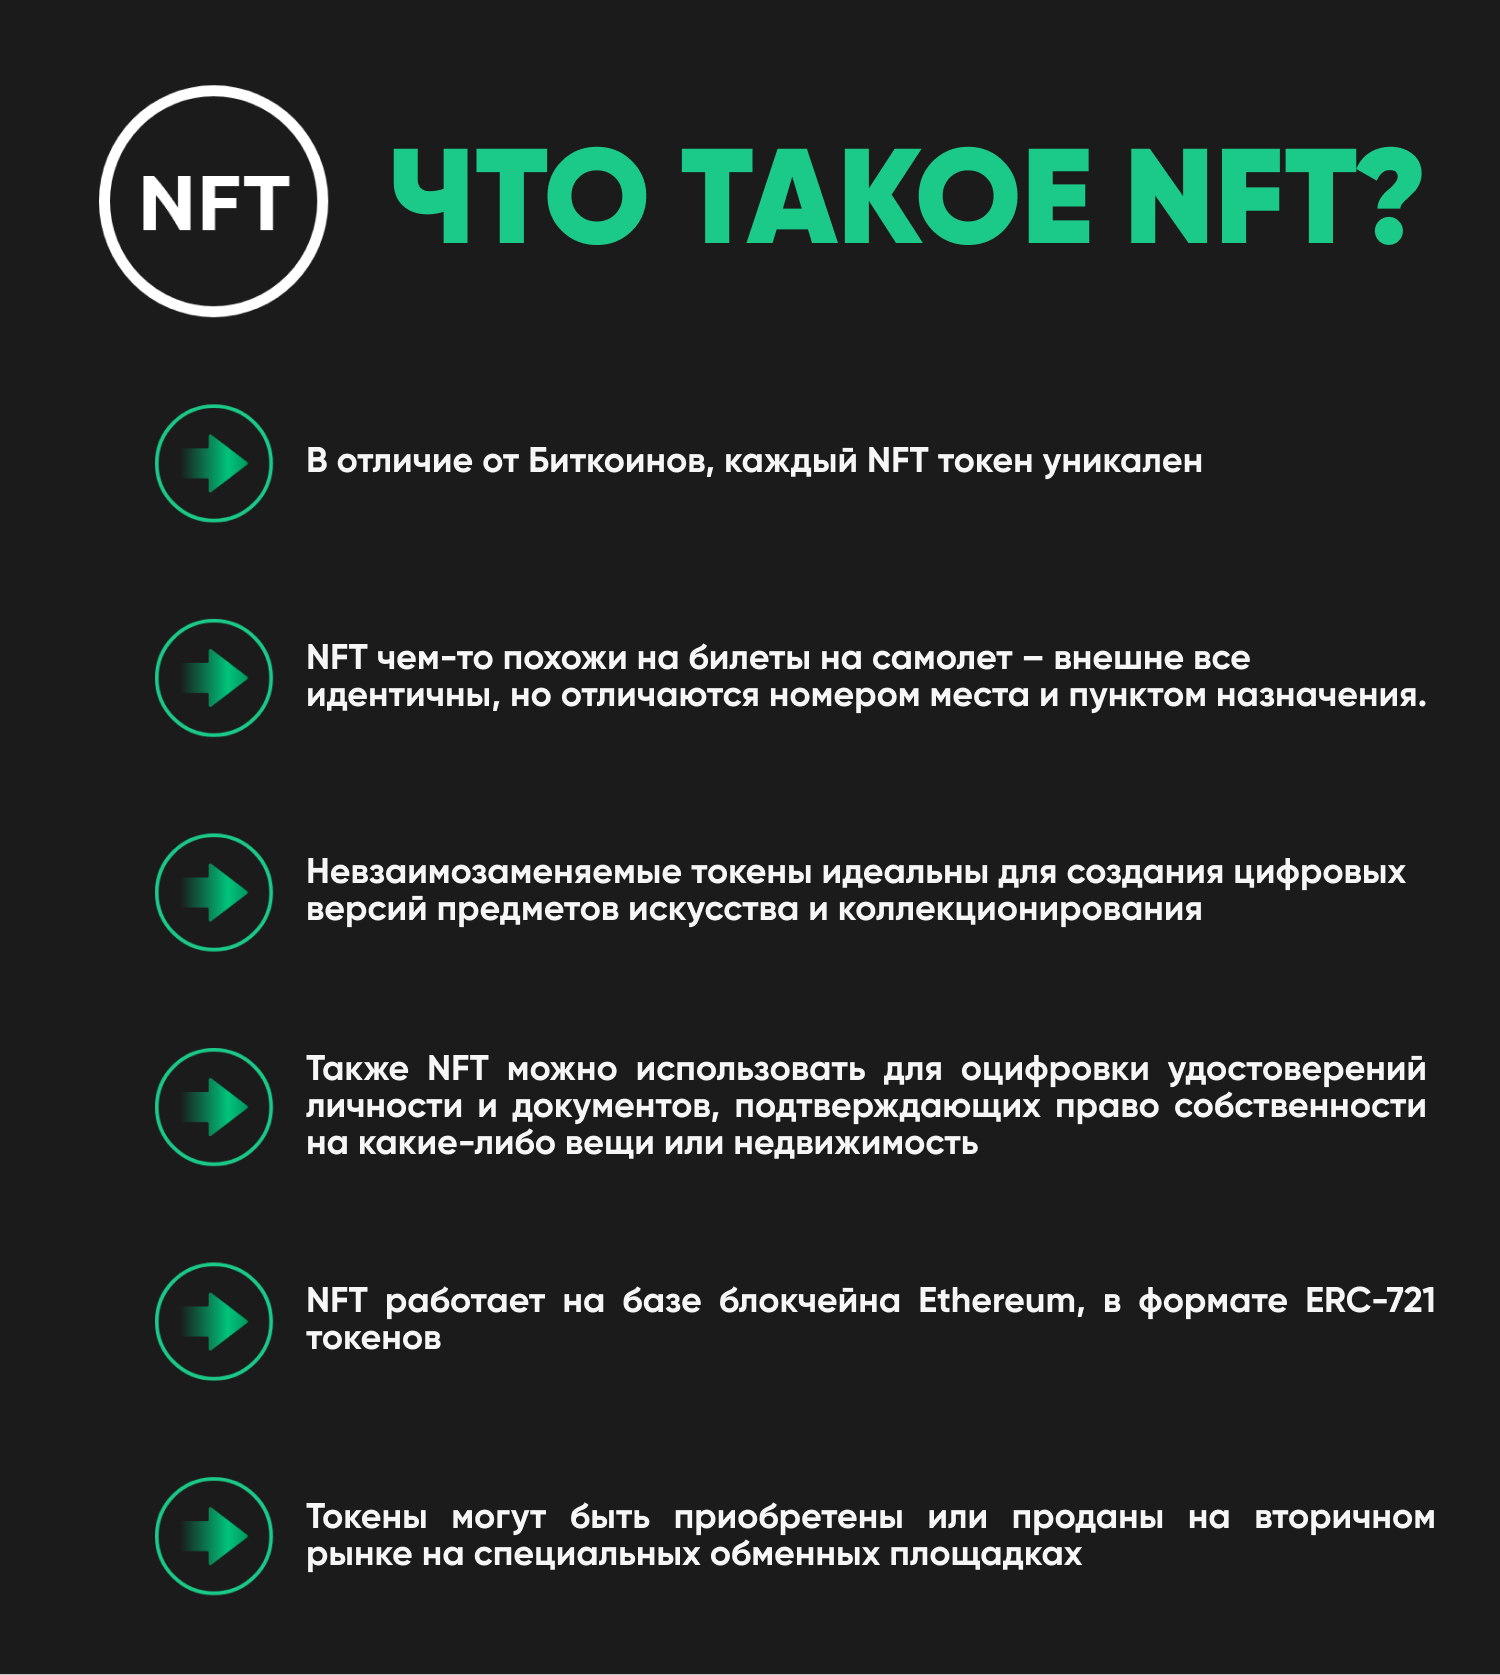 У вас 0 токенов купить токены. NFT токены. Невзаимозаменяемых токенов (NFT). Уникальные NFT токены. NFT token что это простыми словами.